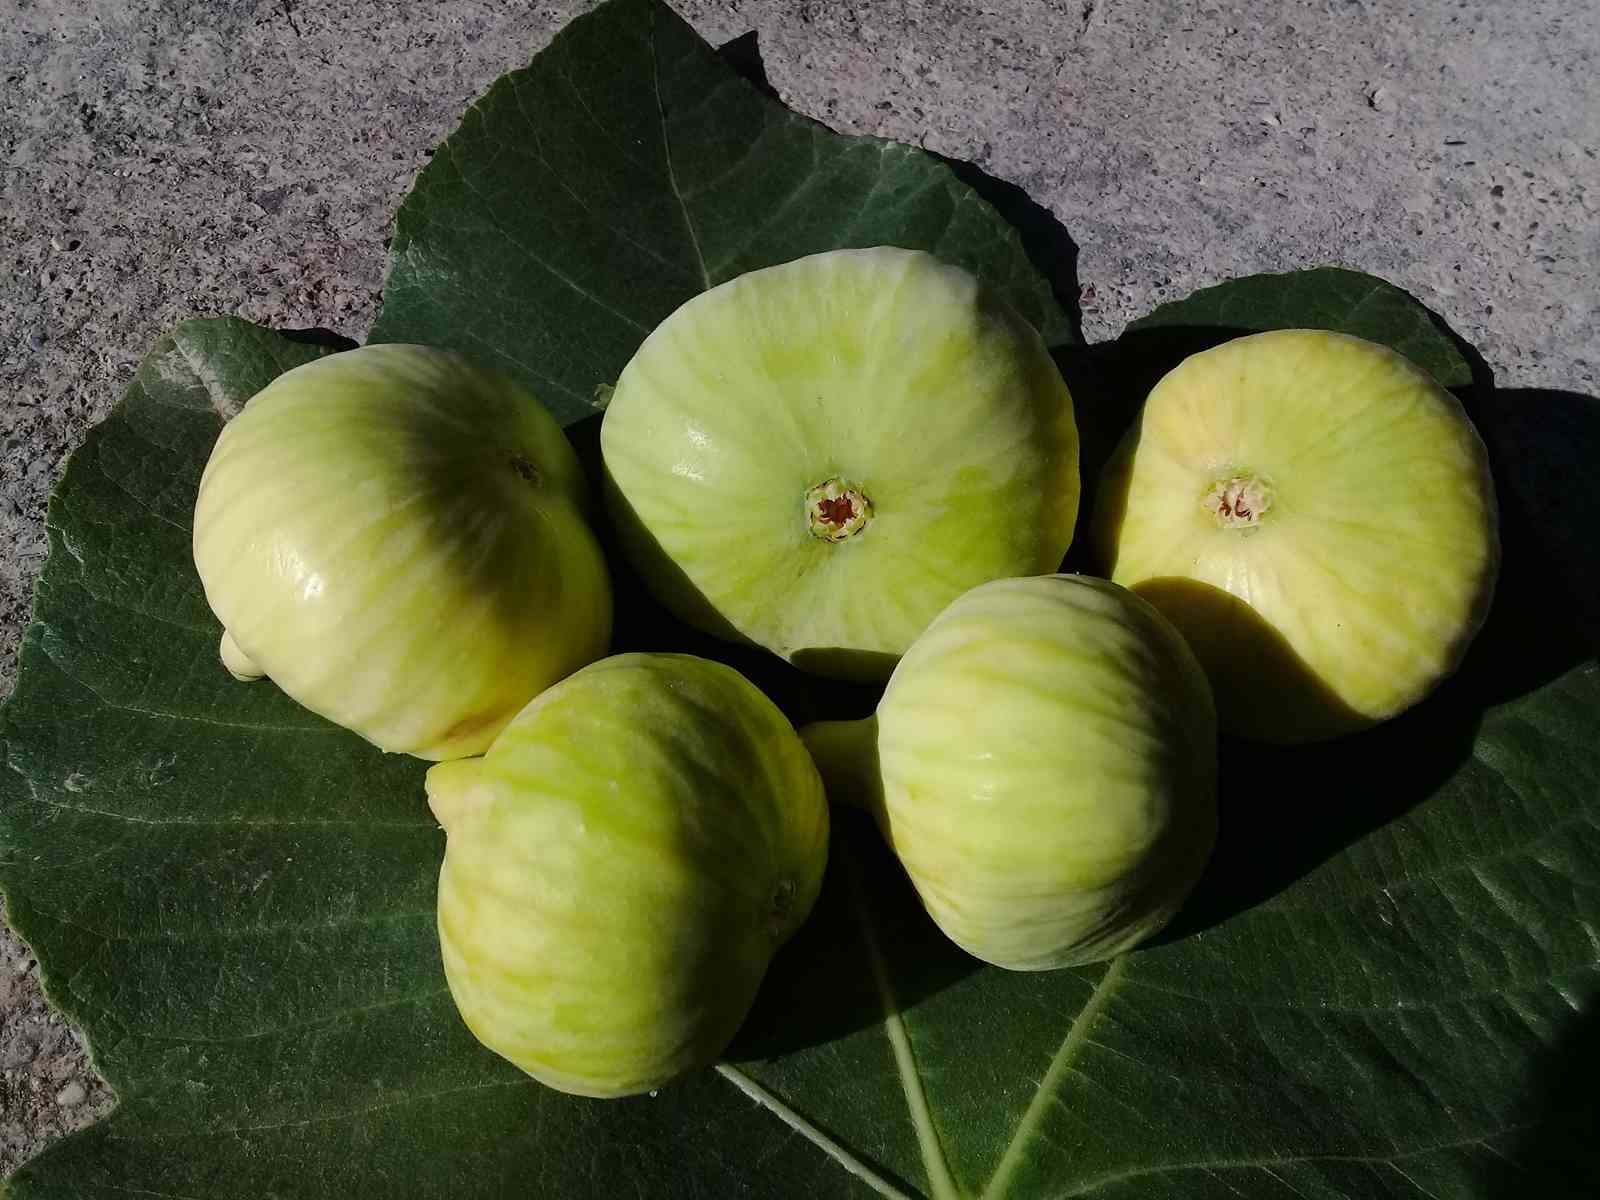 Mersin’de incir sezonu 8 lirayla kapattı #mersin